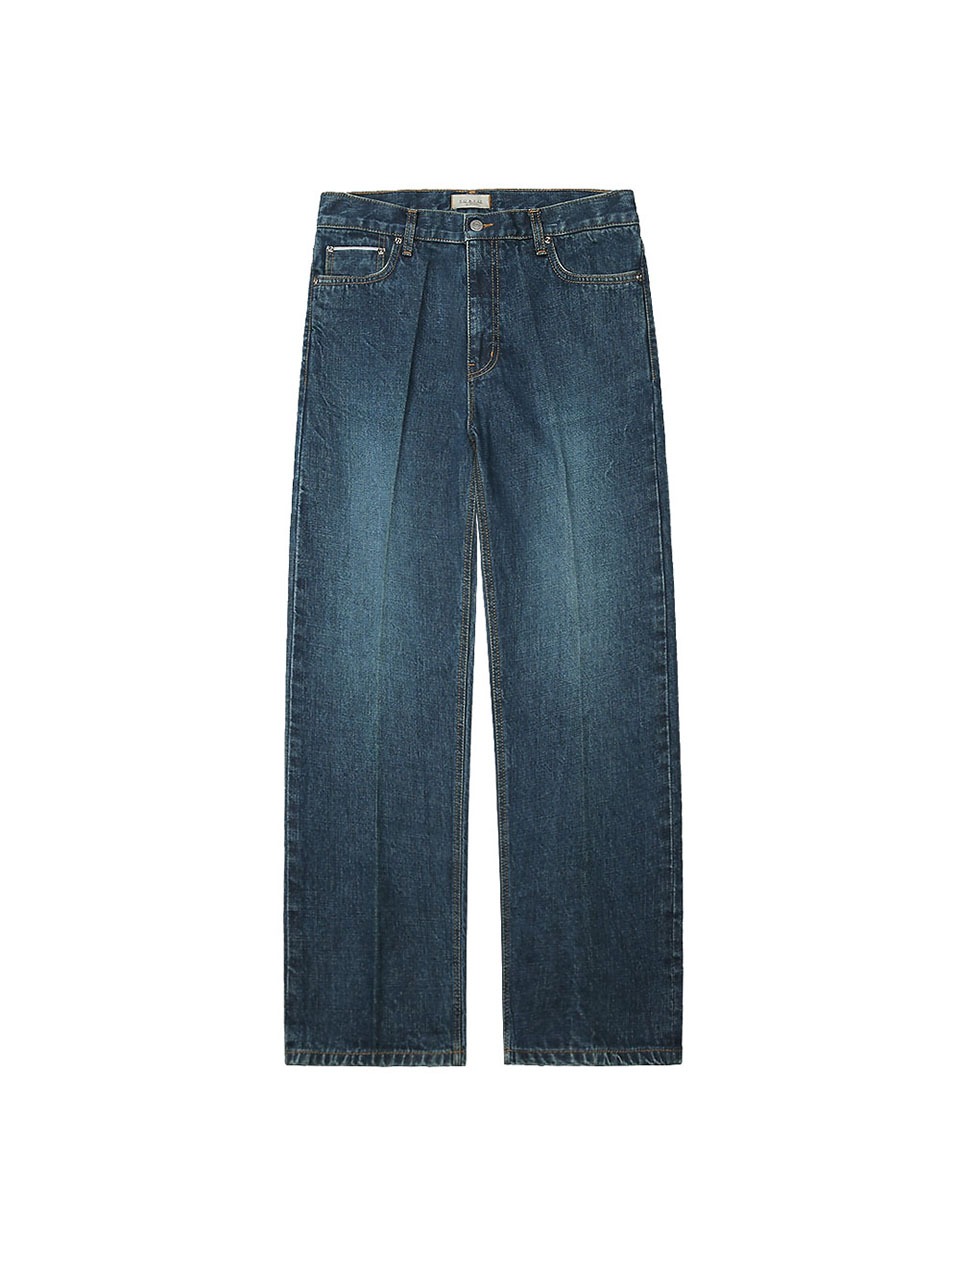 520 Selvedge denim Jeans (Green Blue)